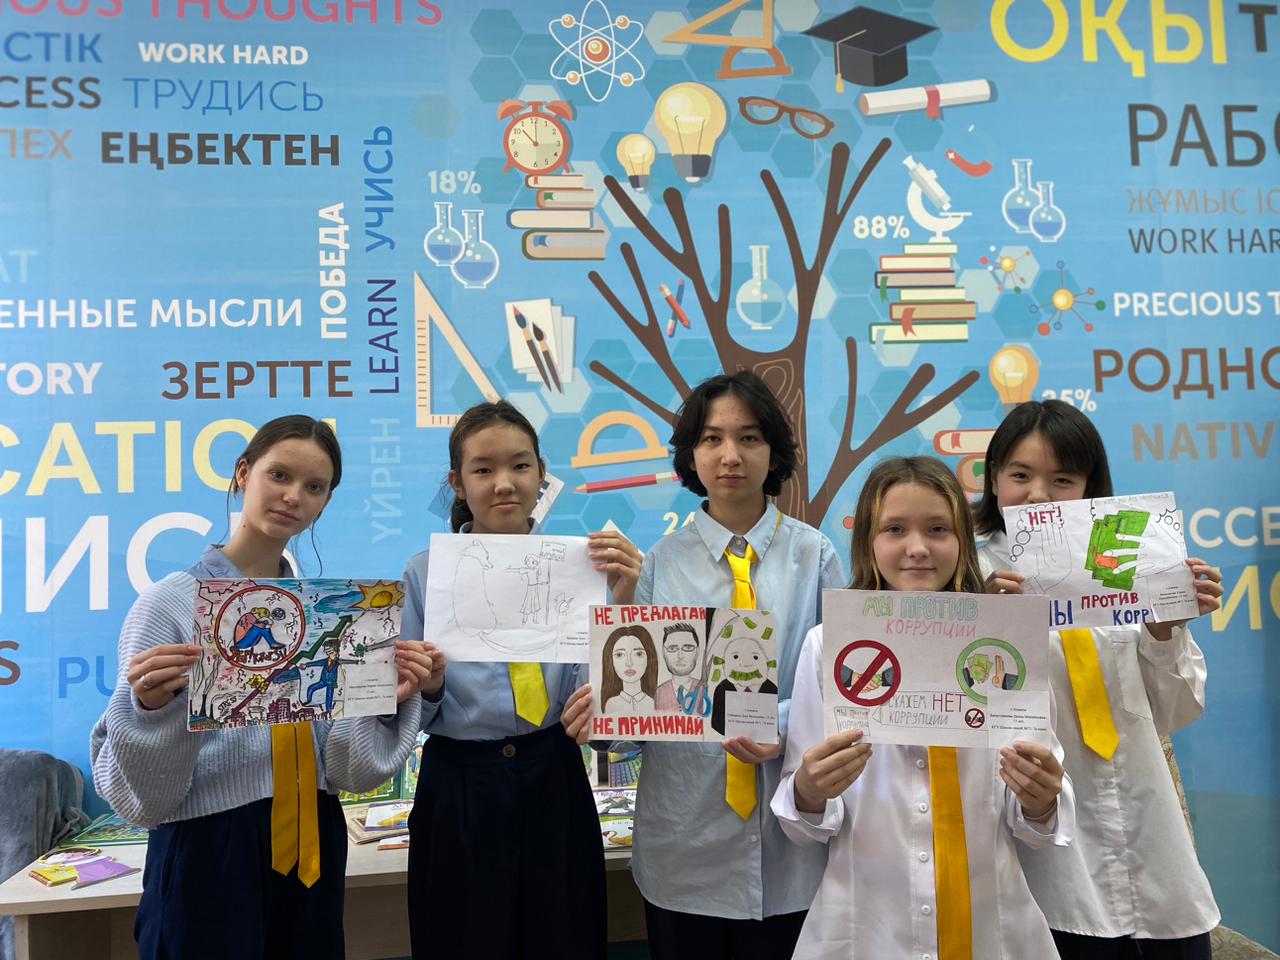 «Қазақстан сыбайлас жемқорлыққа қарсы!»/«Казахстан против коррупции!»